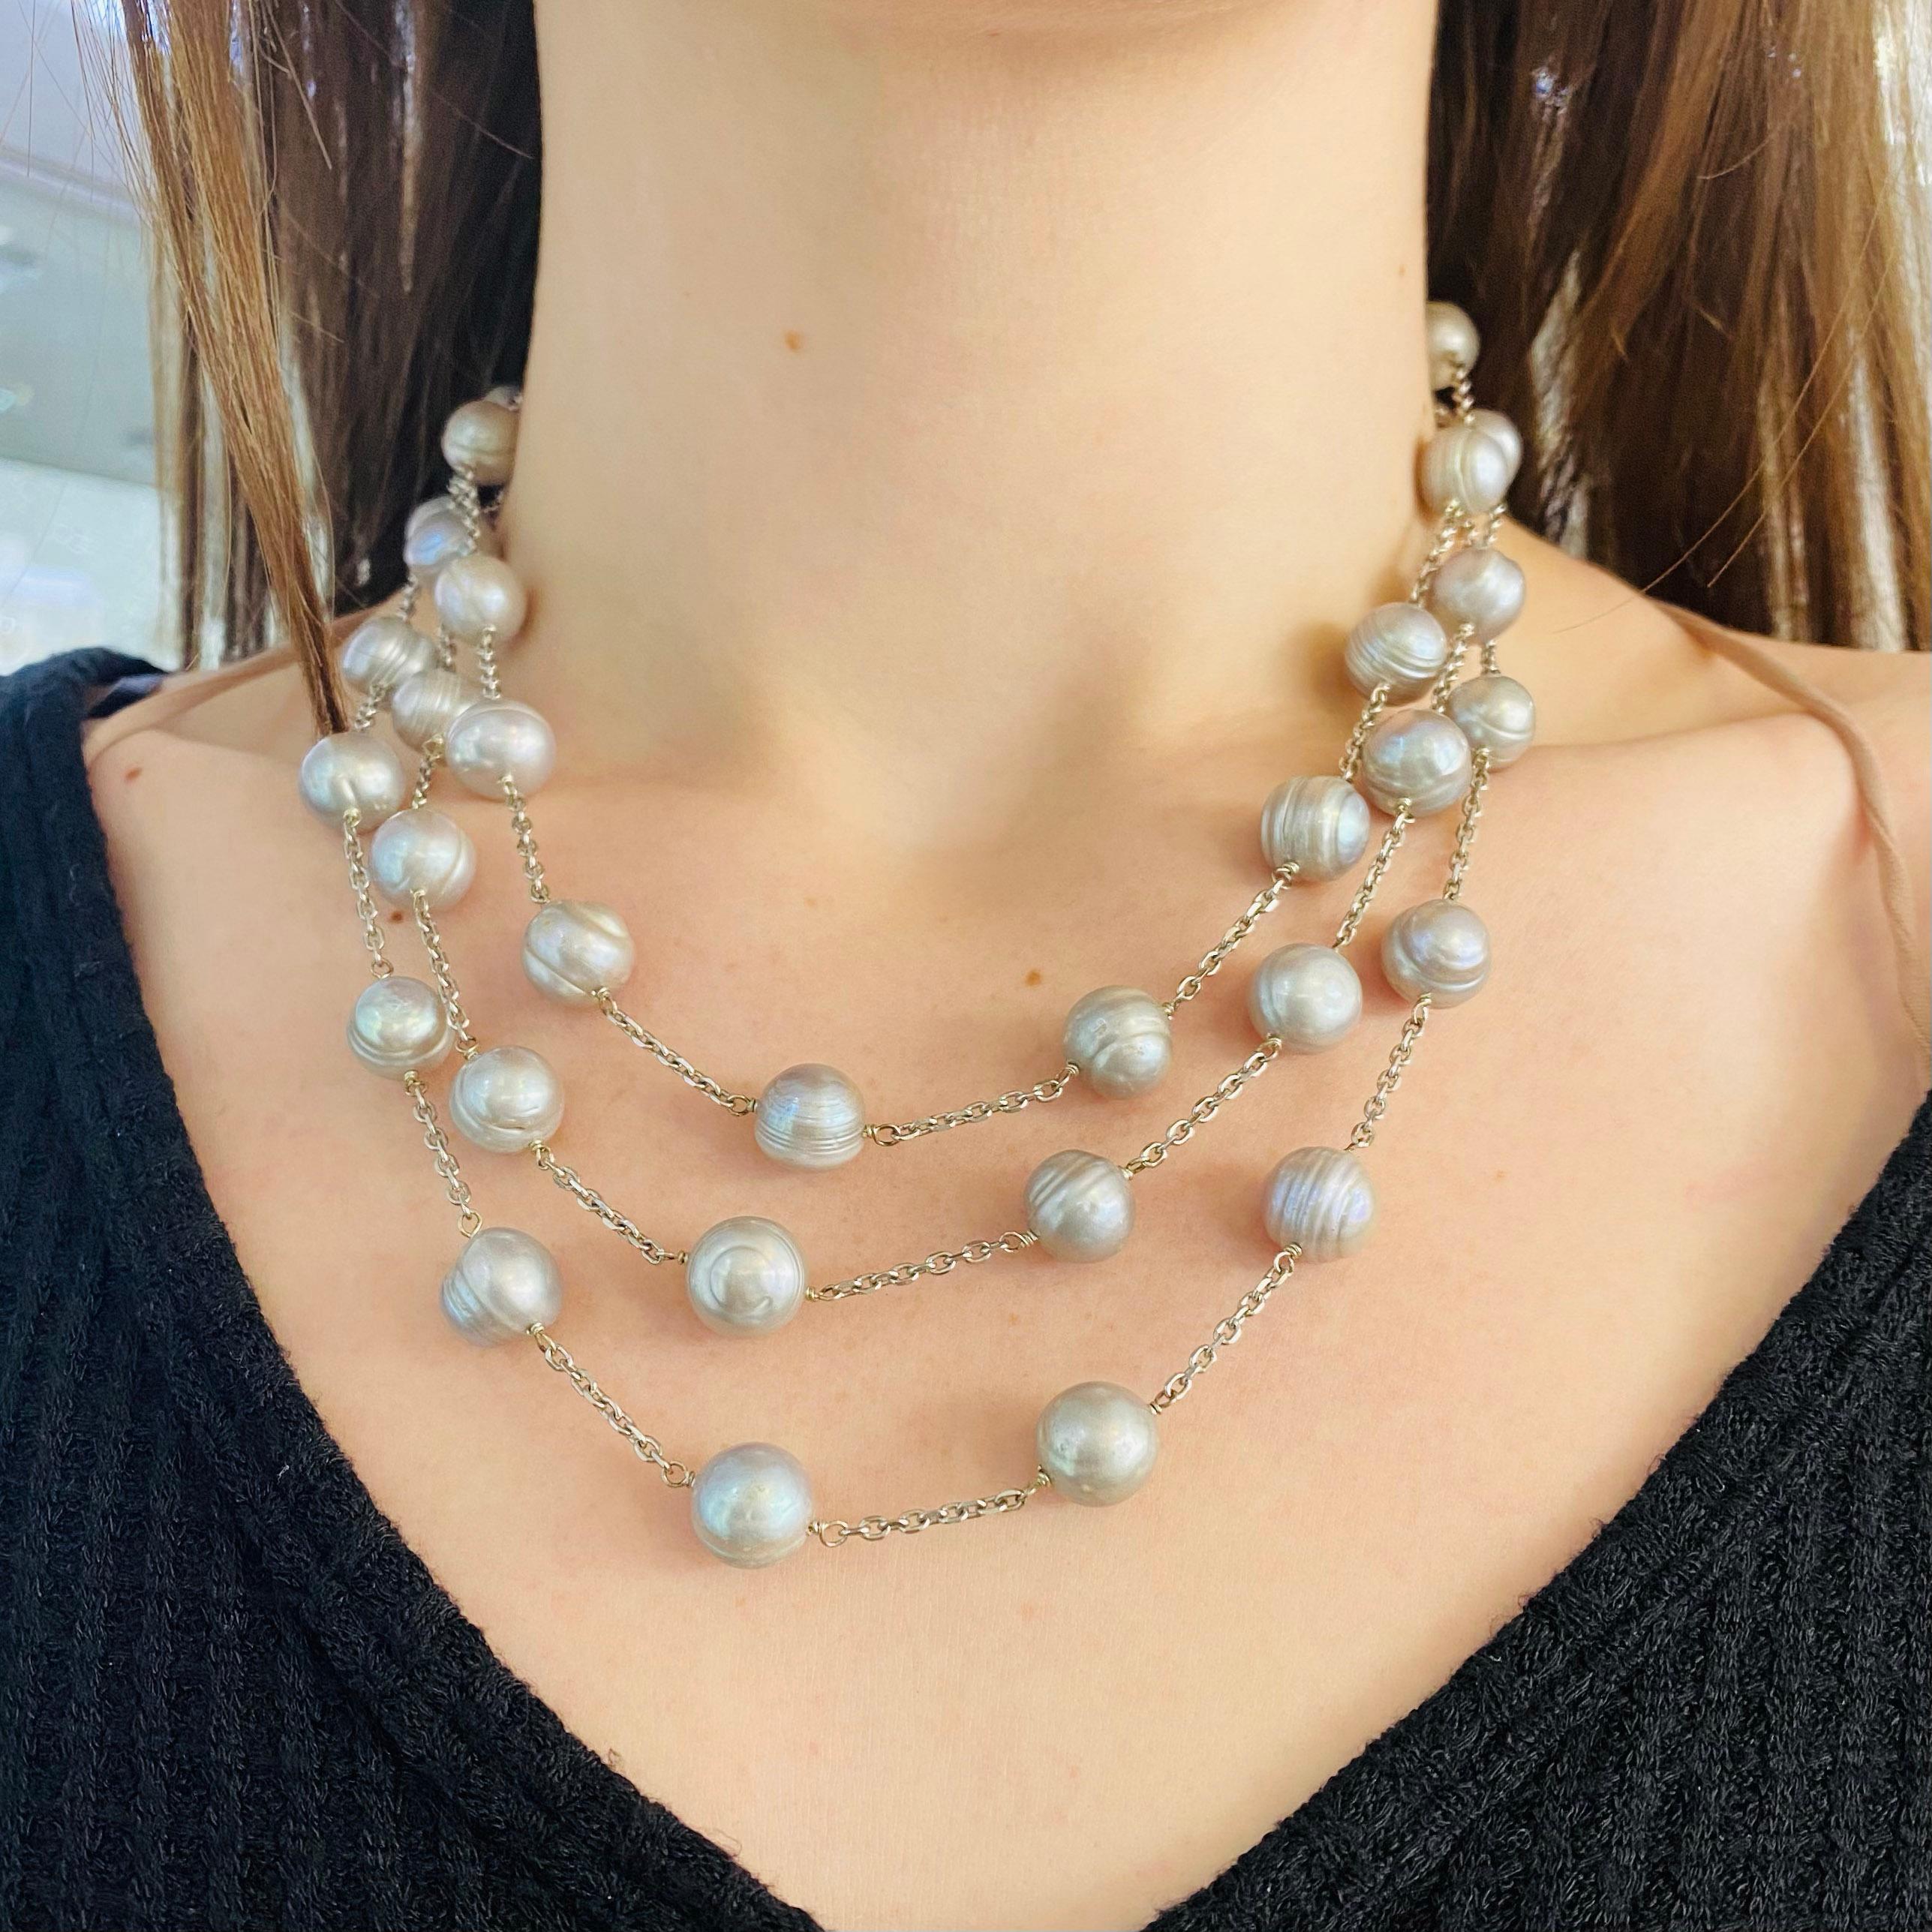 Dies ist eine erstaunliche Süßwasserperlenkette, die graue Perlen hat.  Die drei Stränge sind in der Länge verjüngt, so dass sie perfekt an Ihrem Hals hängen und ist so konzipiert, dass die Perlen in einem schönen Design verteilt sind. Diese sehr